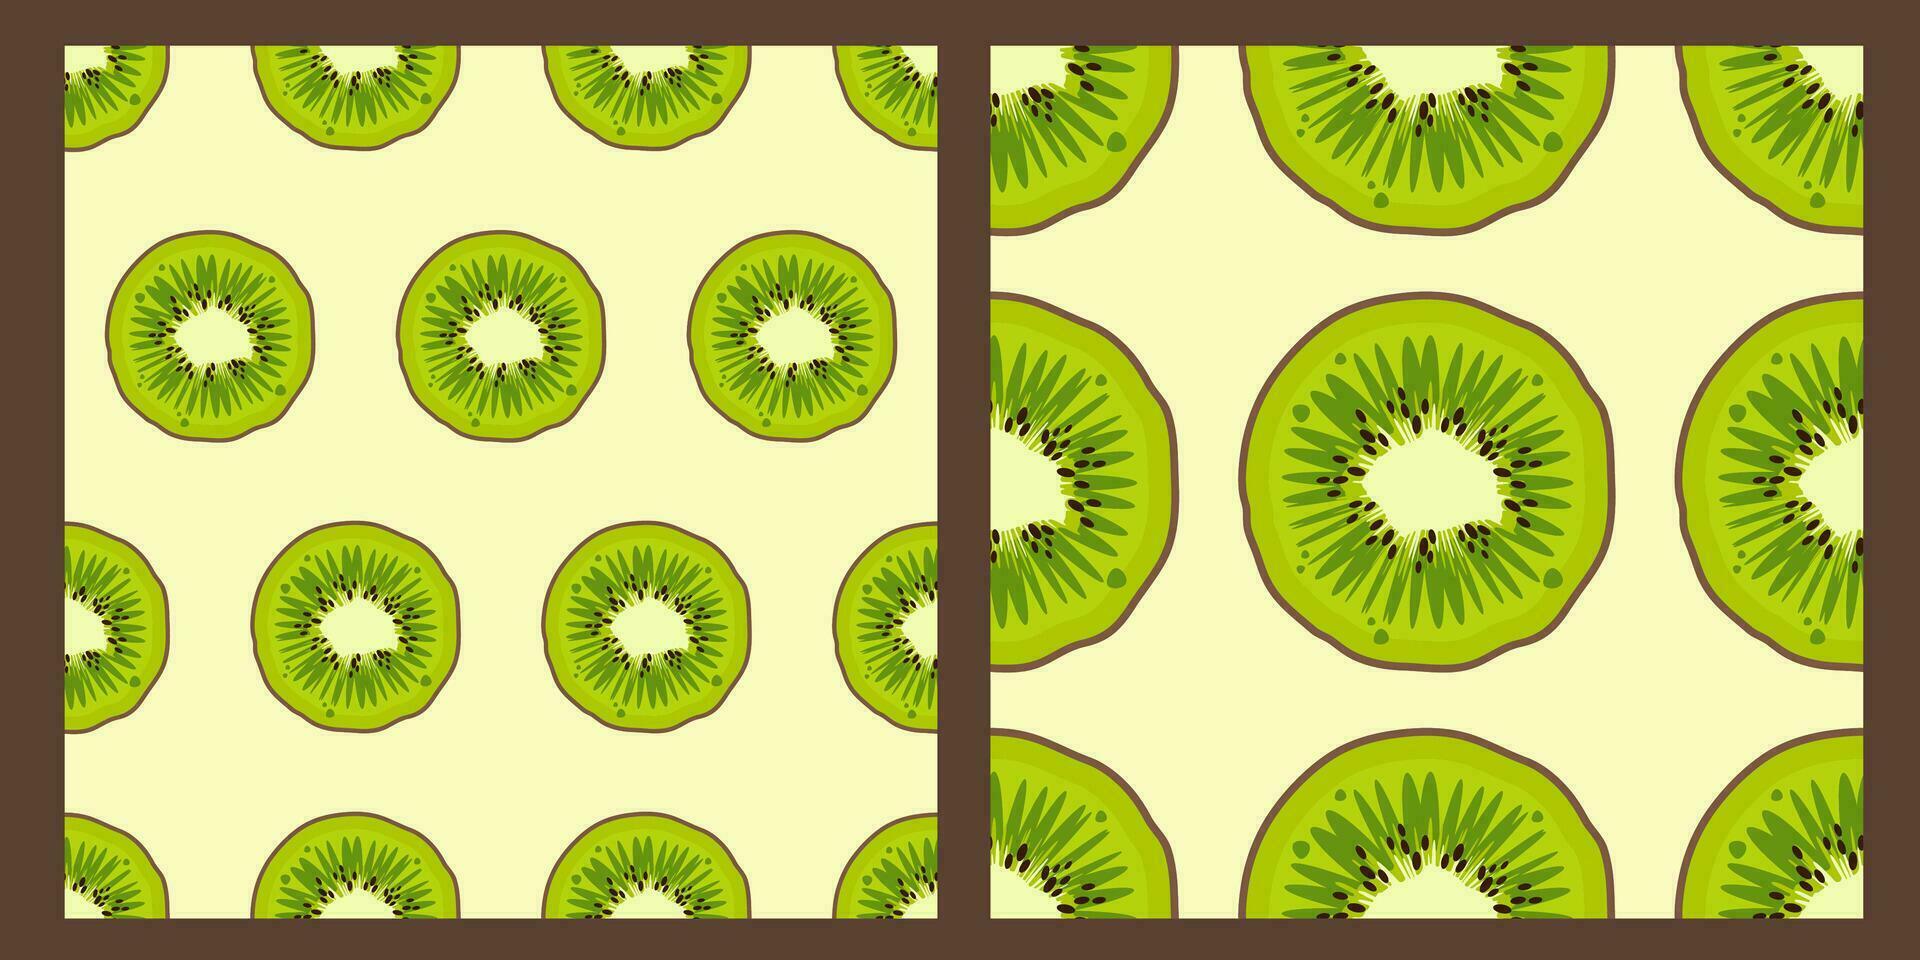 einstellen von Kiwi Obst Muster. modern frisch hell Design von exotisch Früchte auf Weiß Hintergrund. reif saftig Grün Früchte. Vektor Illustration zum Tapeten,Textil, Netz, Notizbücher, Fall, Verpackung Papier